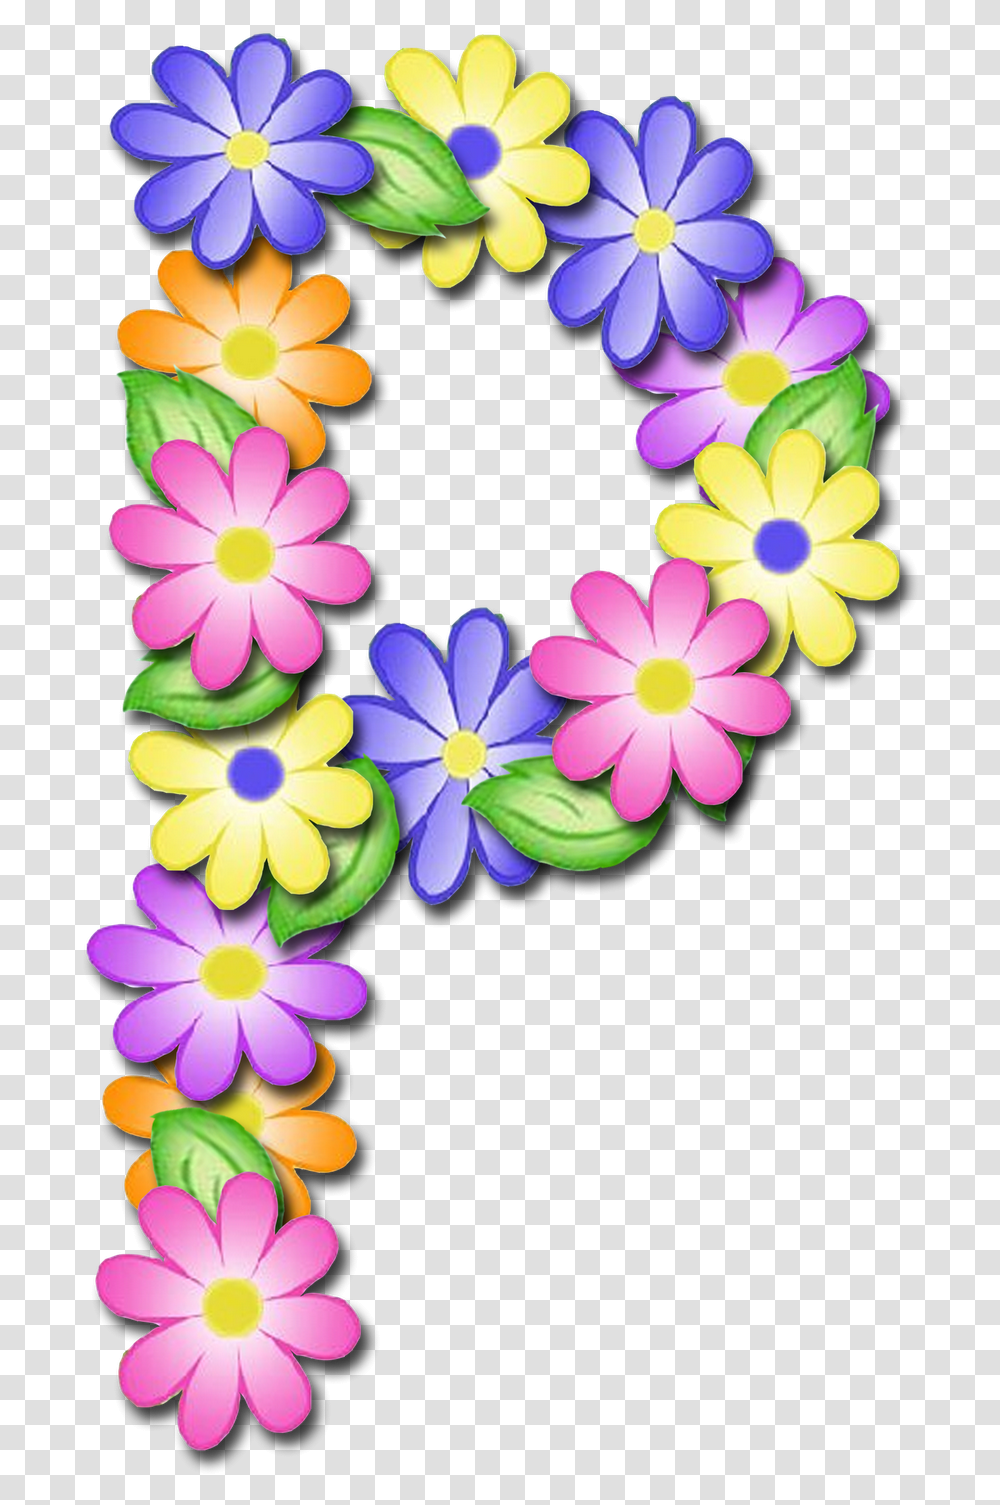 Letras De Flores P, Floral Design, Pattern Transparent Png